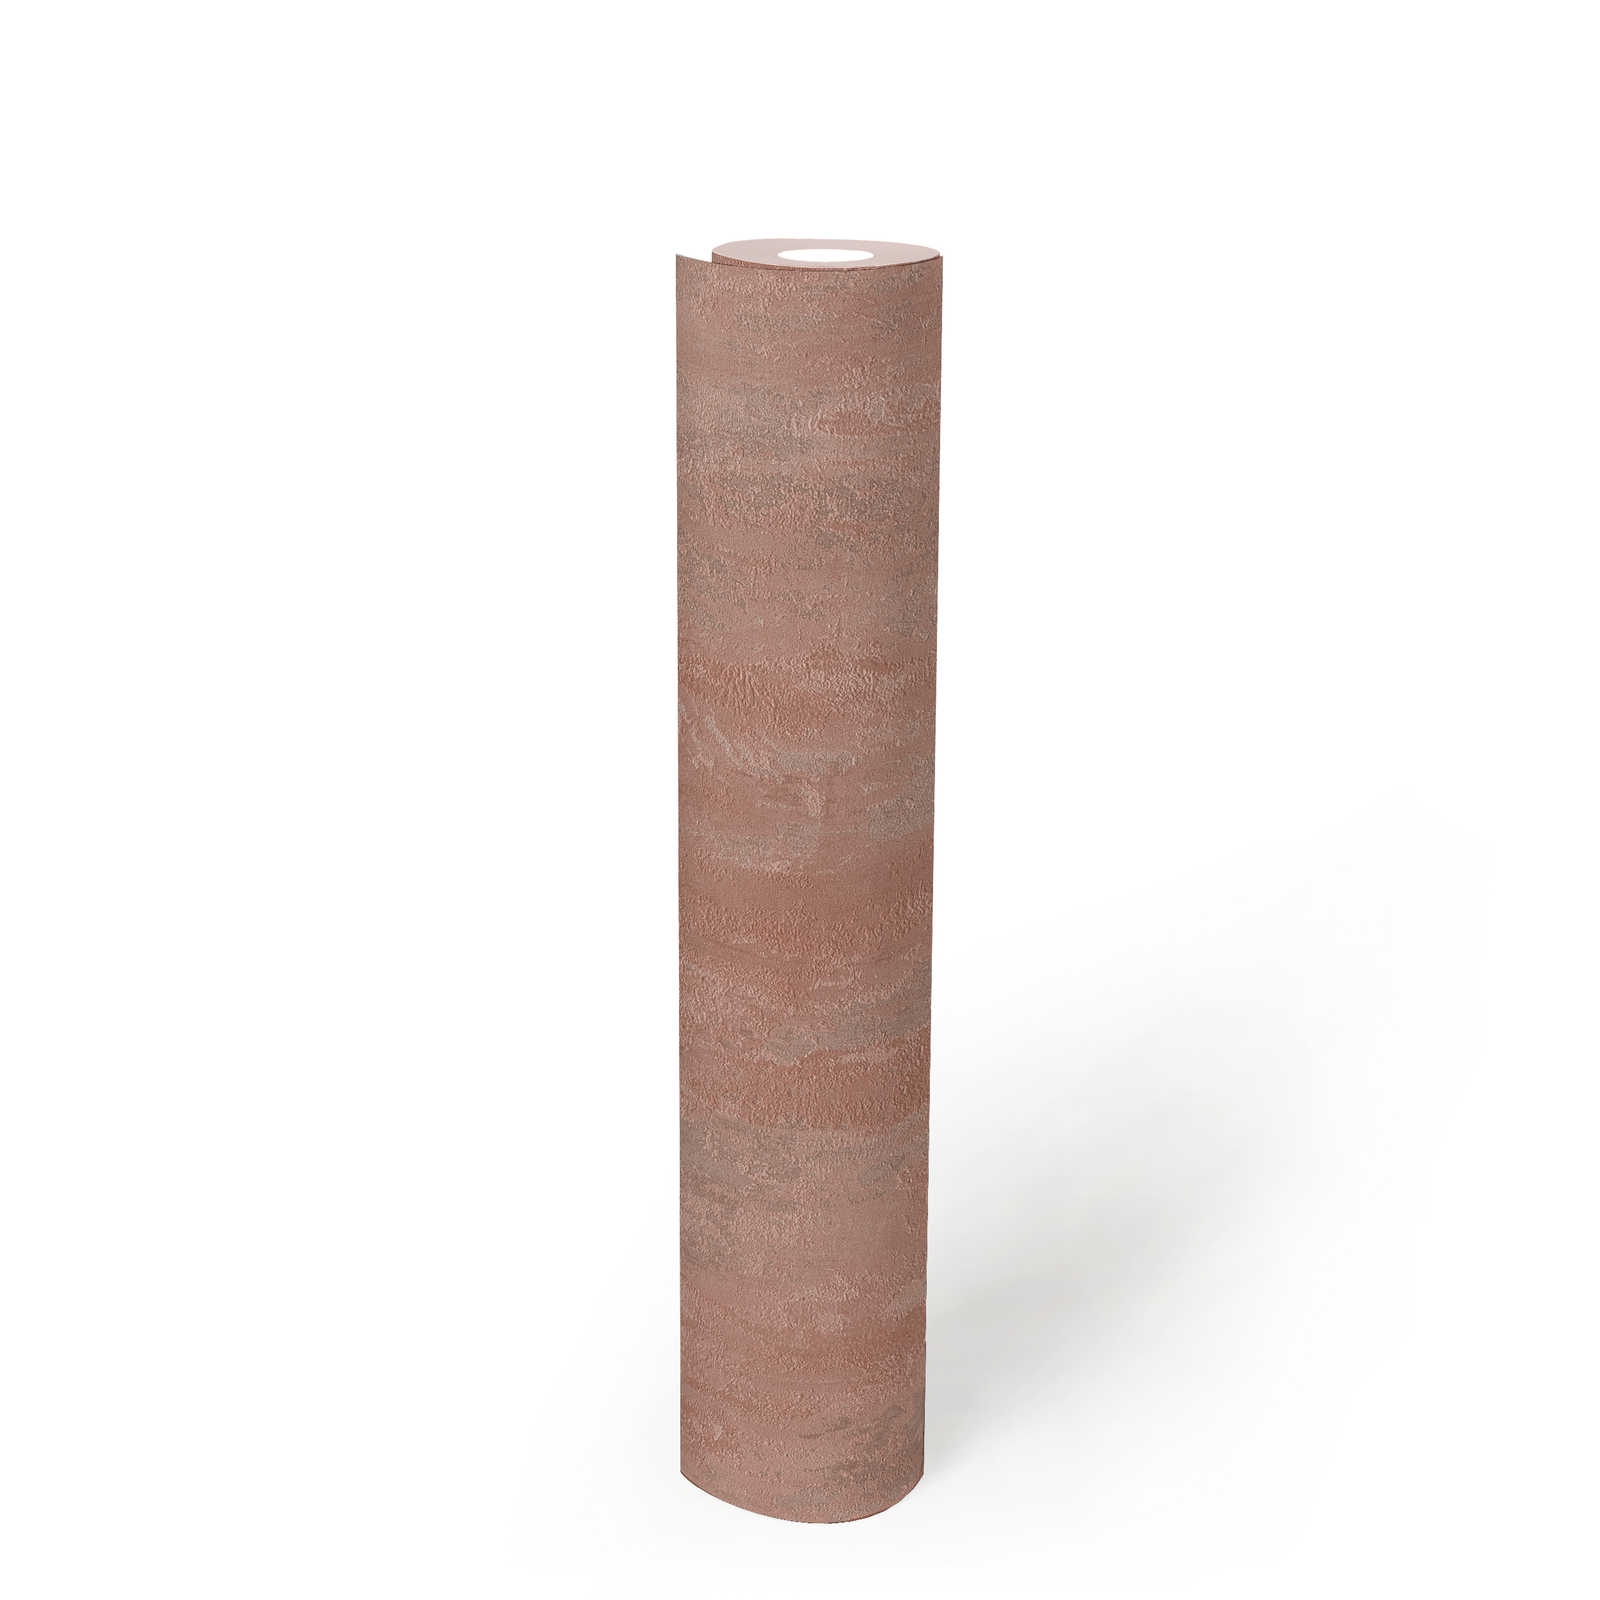             Papier peint style industriel avec effet structuré - métallique, rose
        